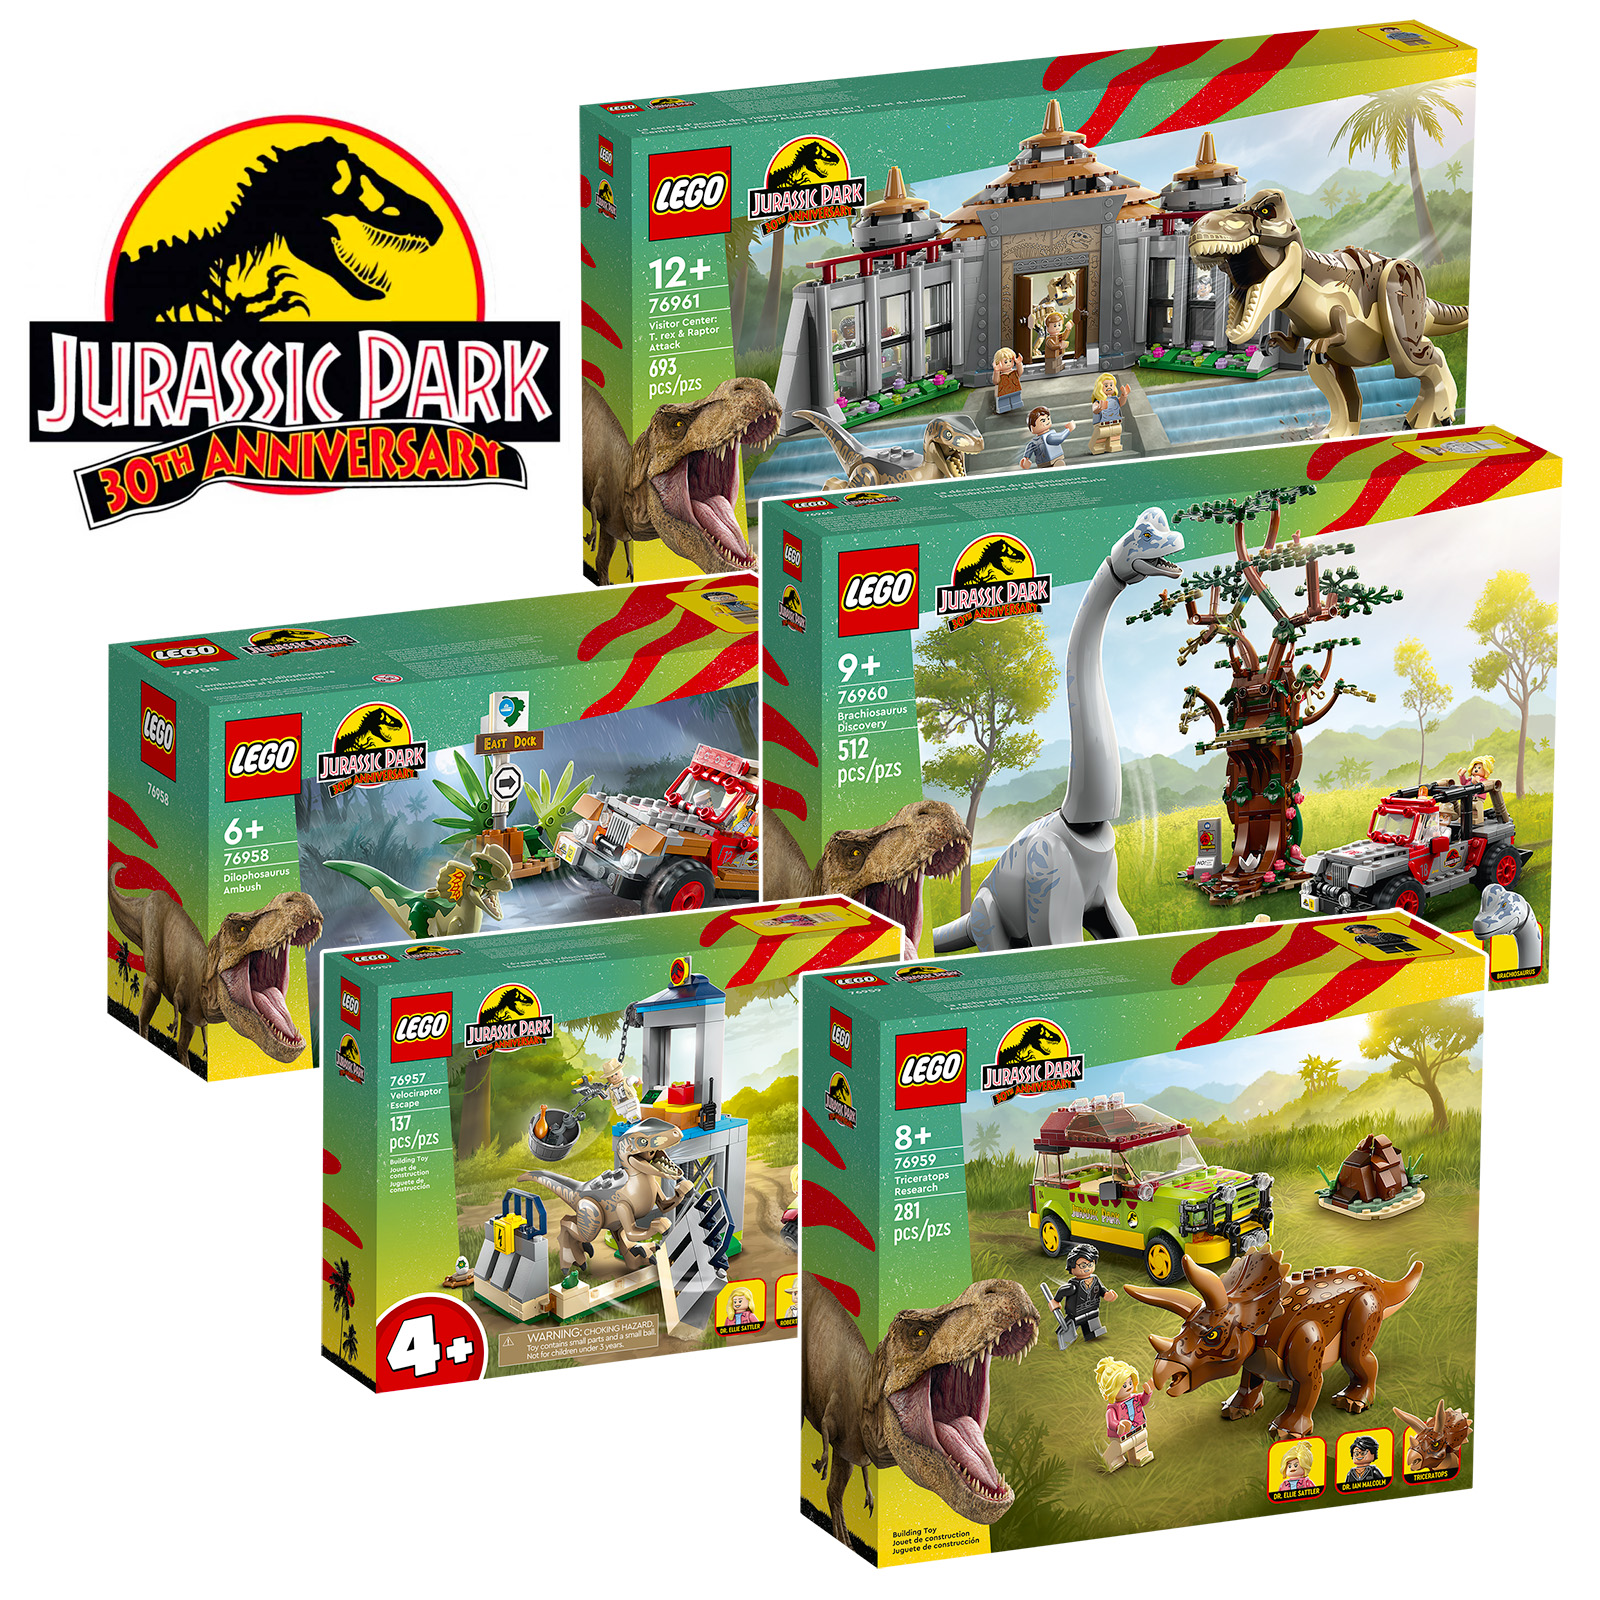 ▻ Nuove uscite LEGO Jurassic Park: cinque set per celebrare il 30°  anniversario del franchise - HOTH BRICKS